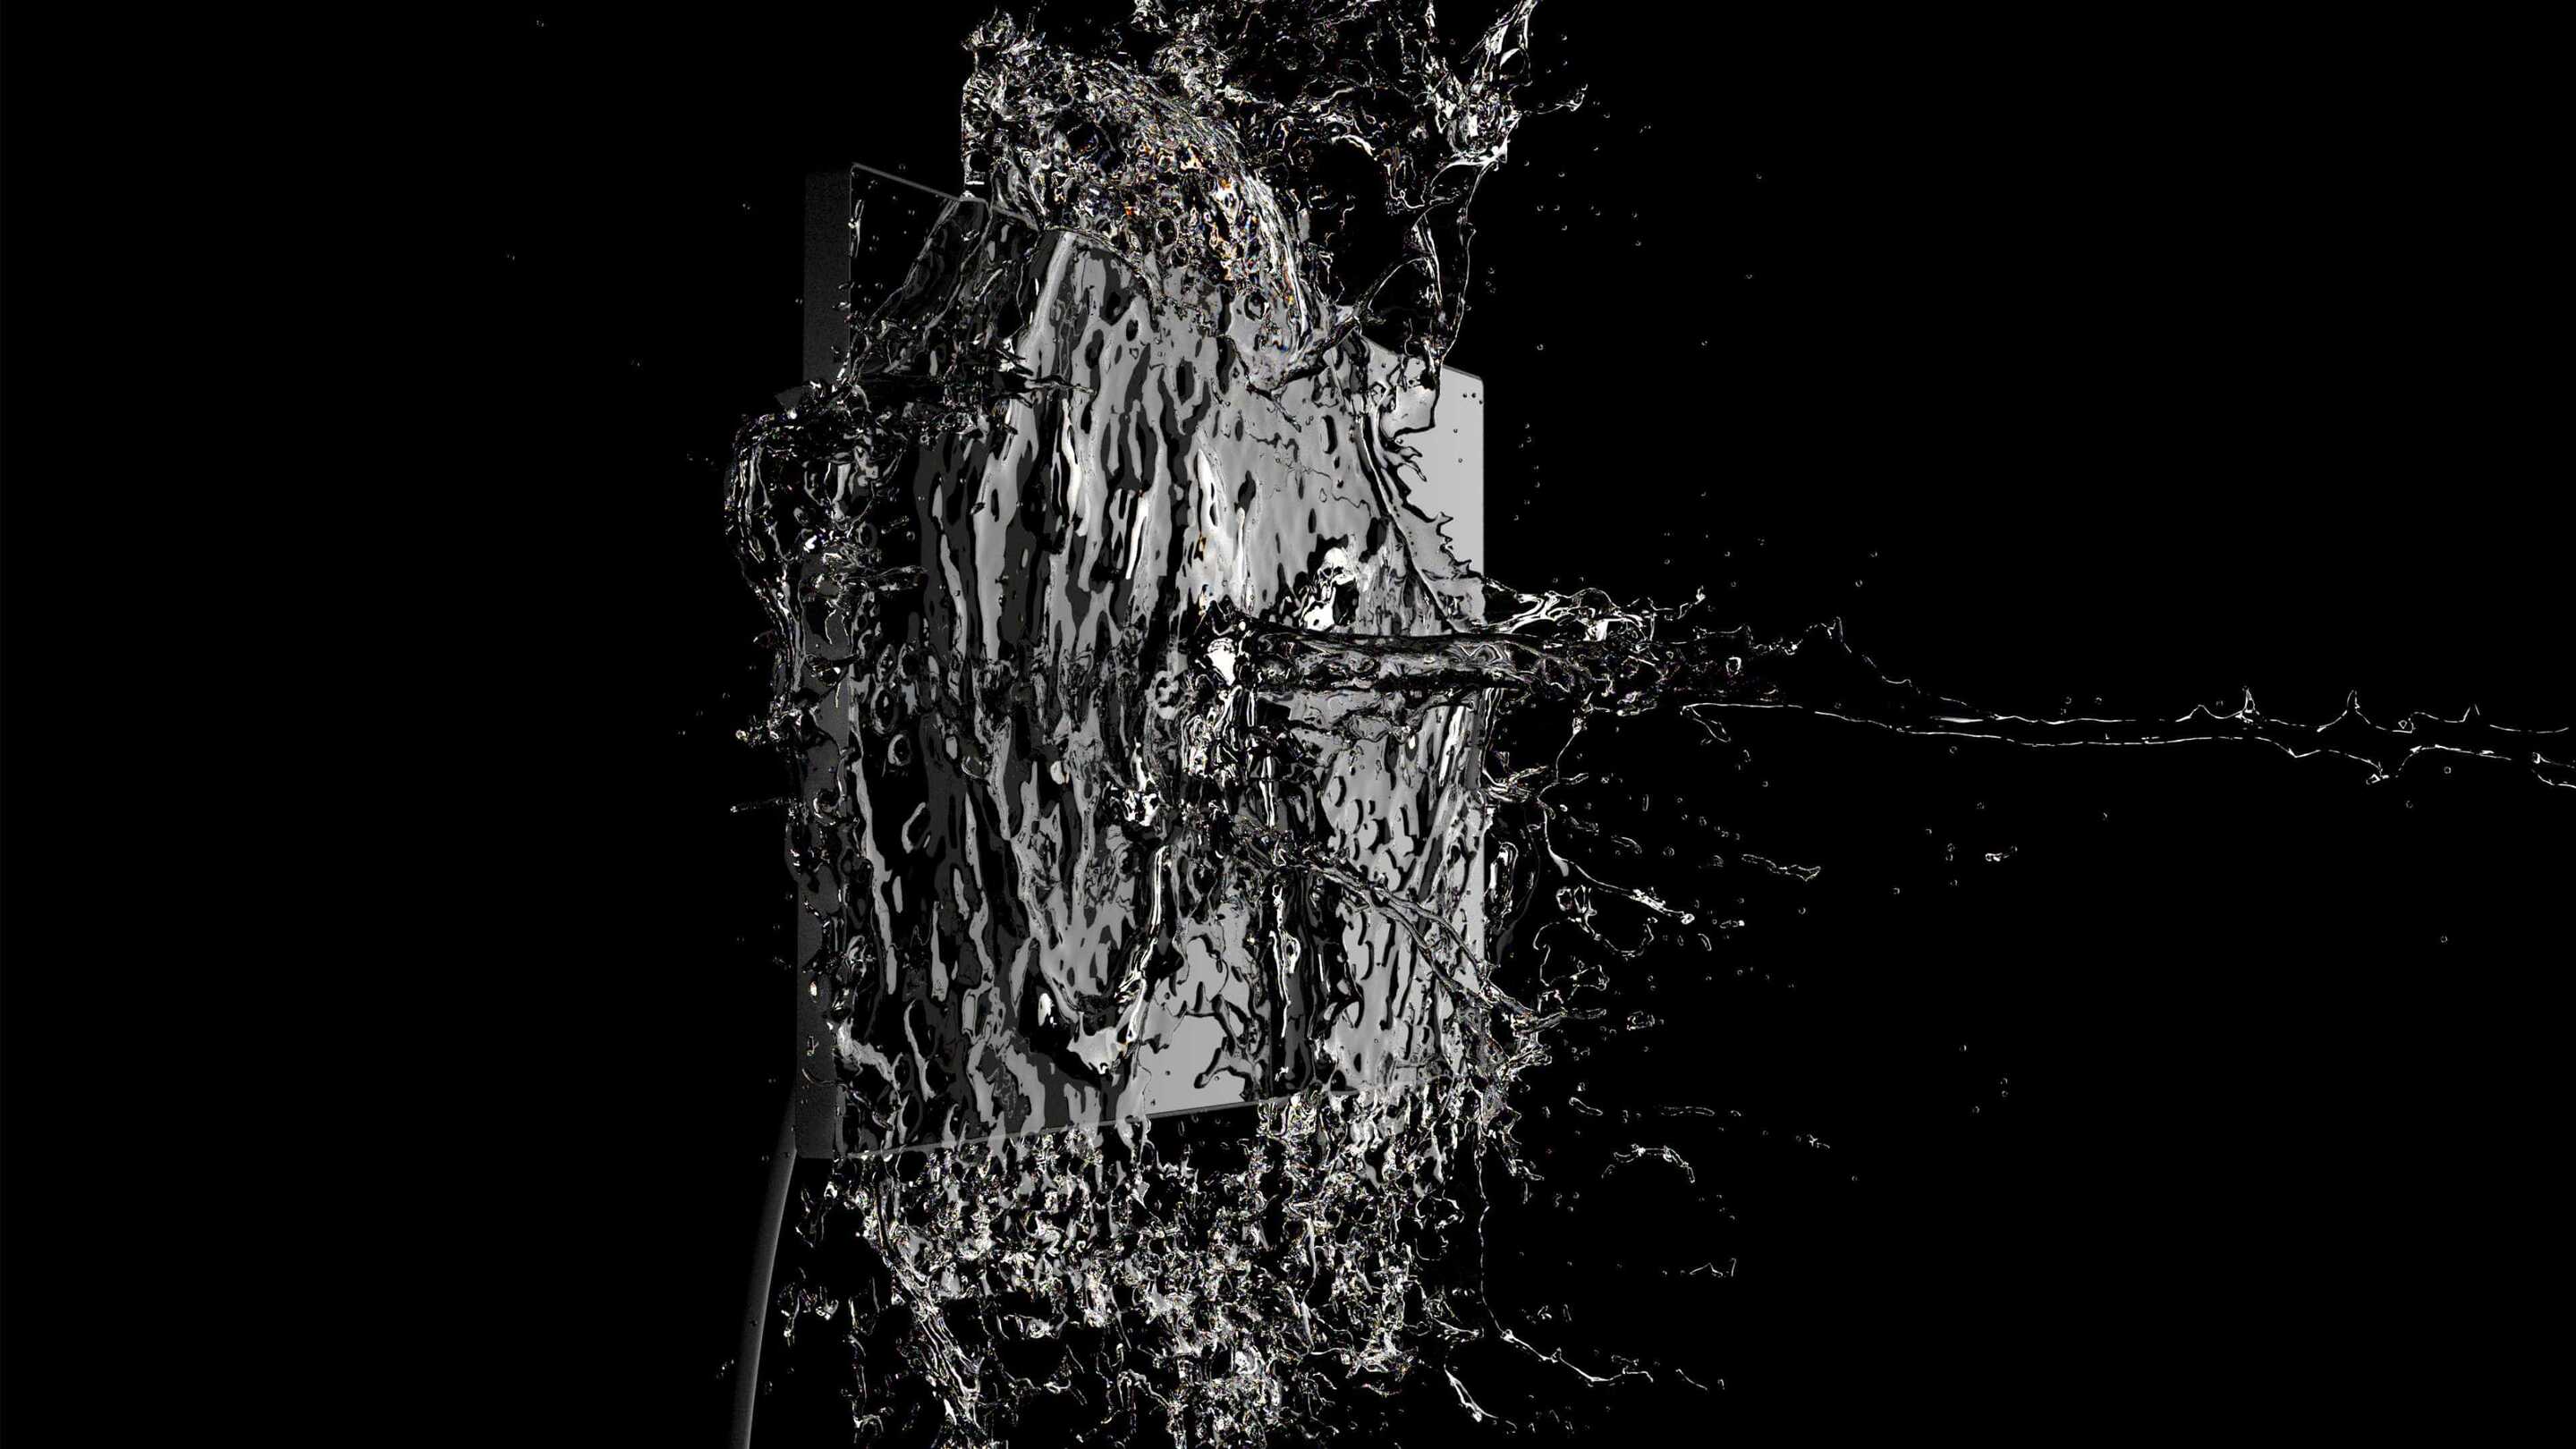 Màn hình công nghiệp - Màn hình cảm ứng chống thấm nước, nước bắn ra từ một vật thể vuông